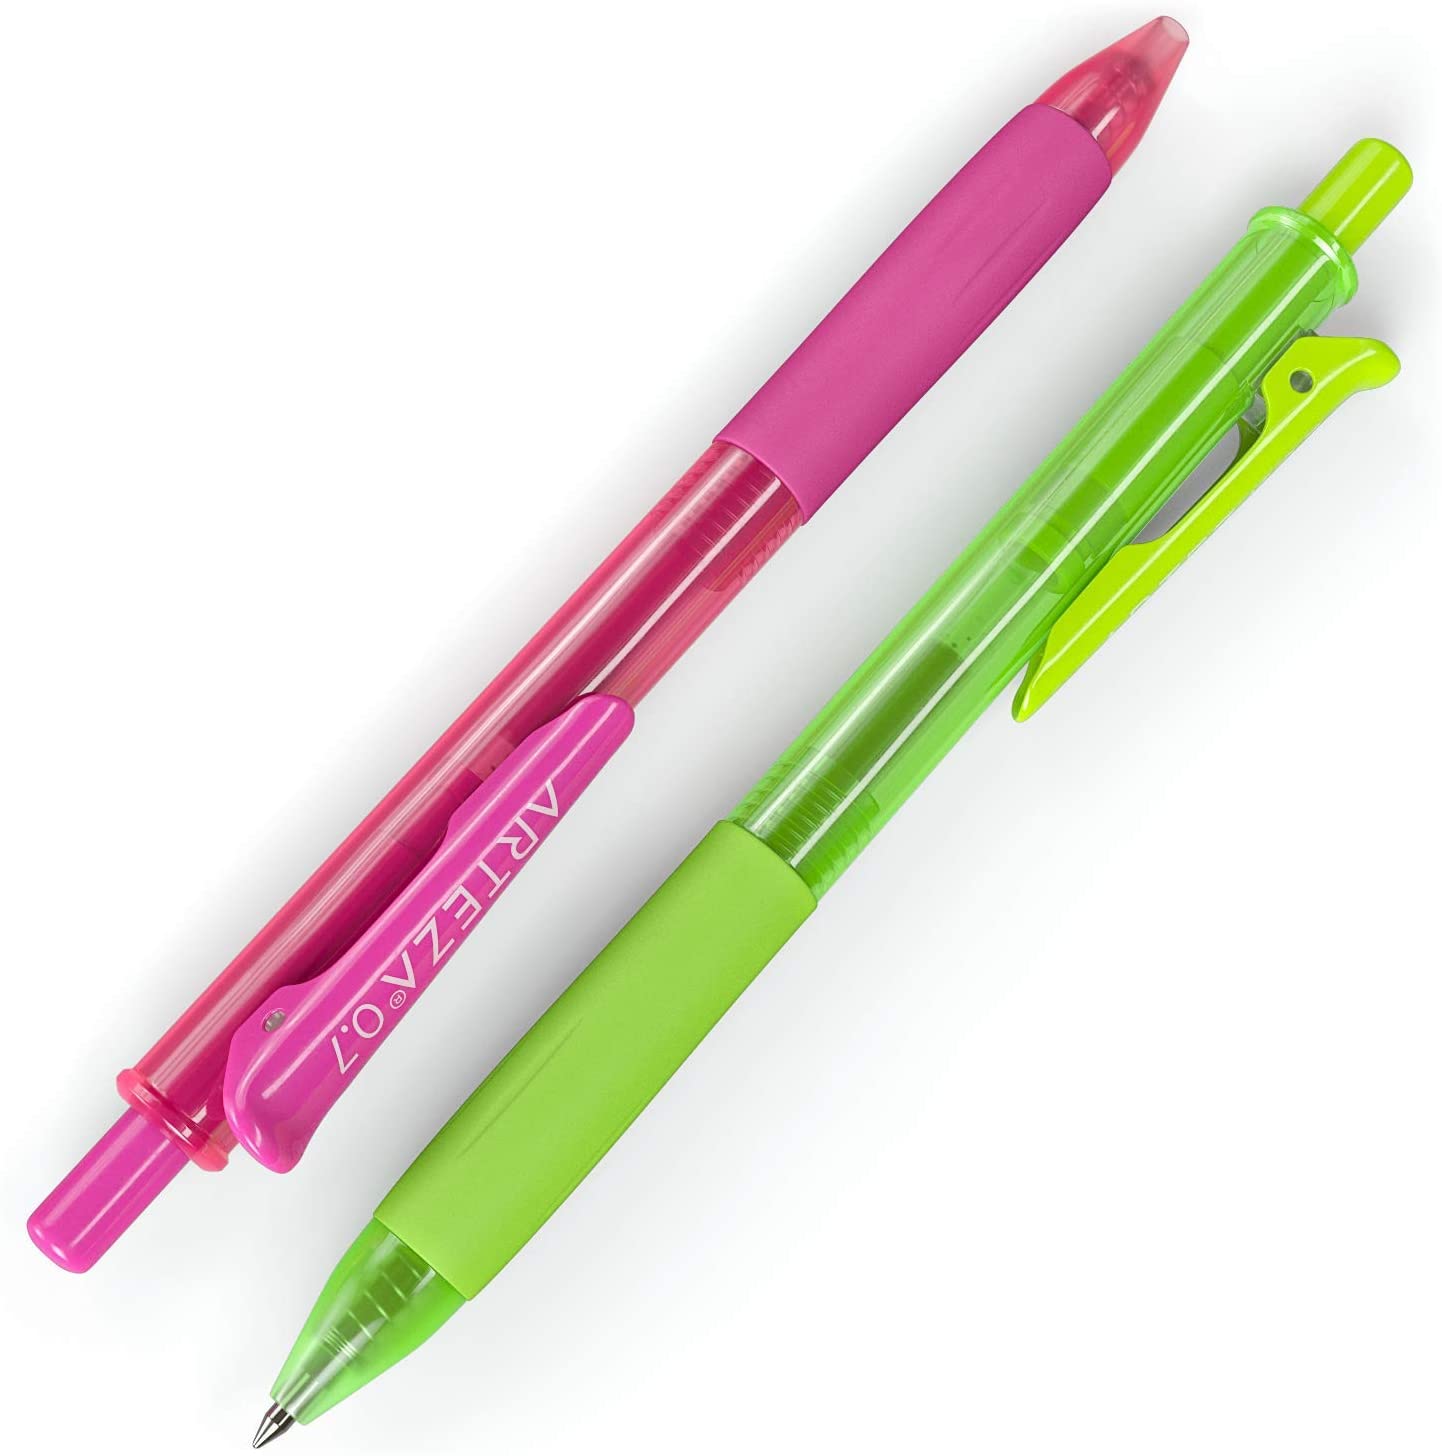 https://arteza.com/cdn/shop/products/retractable-gel-ink-pens-bright-colors-set-of-14_1mIIYCsw.jpg?v=1701087524&width=1445